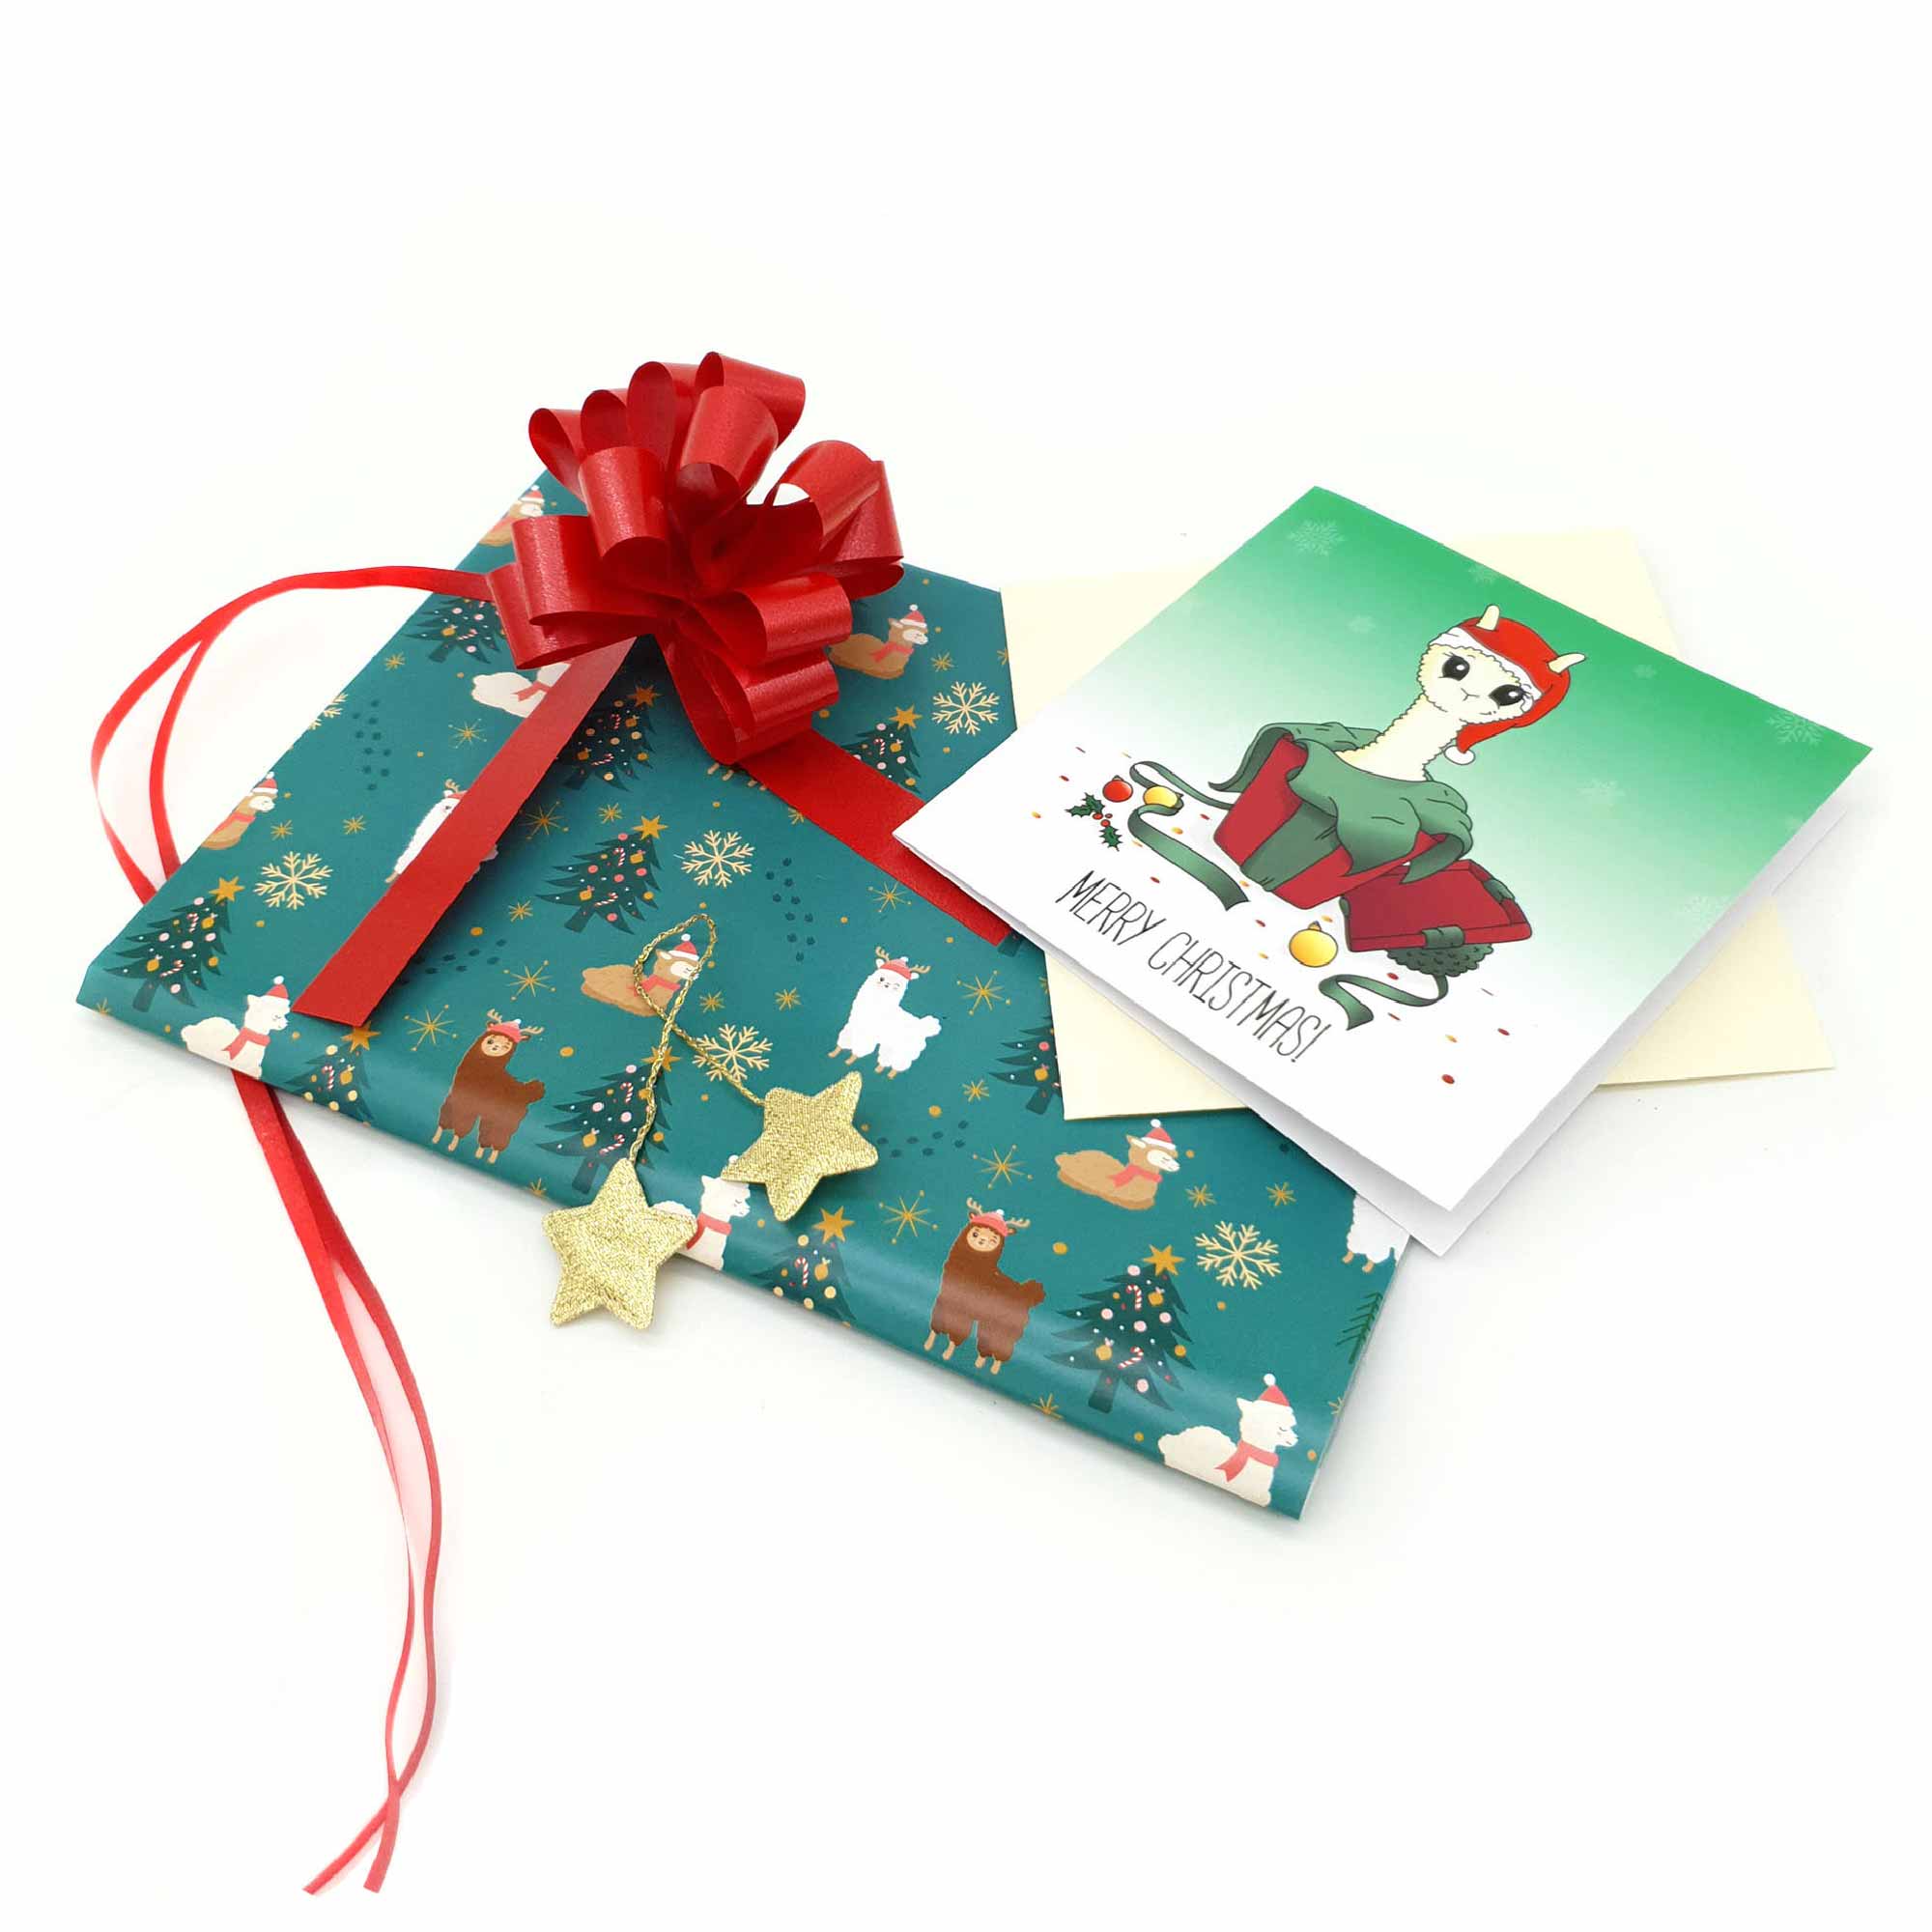 Alpaca Gift Wrapping Kit - Wrap your own alpaca toys